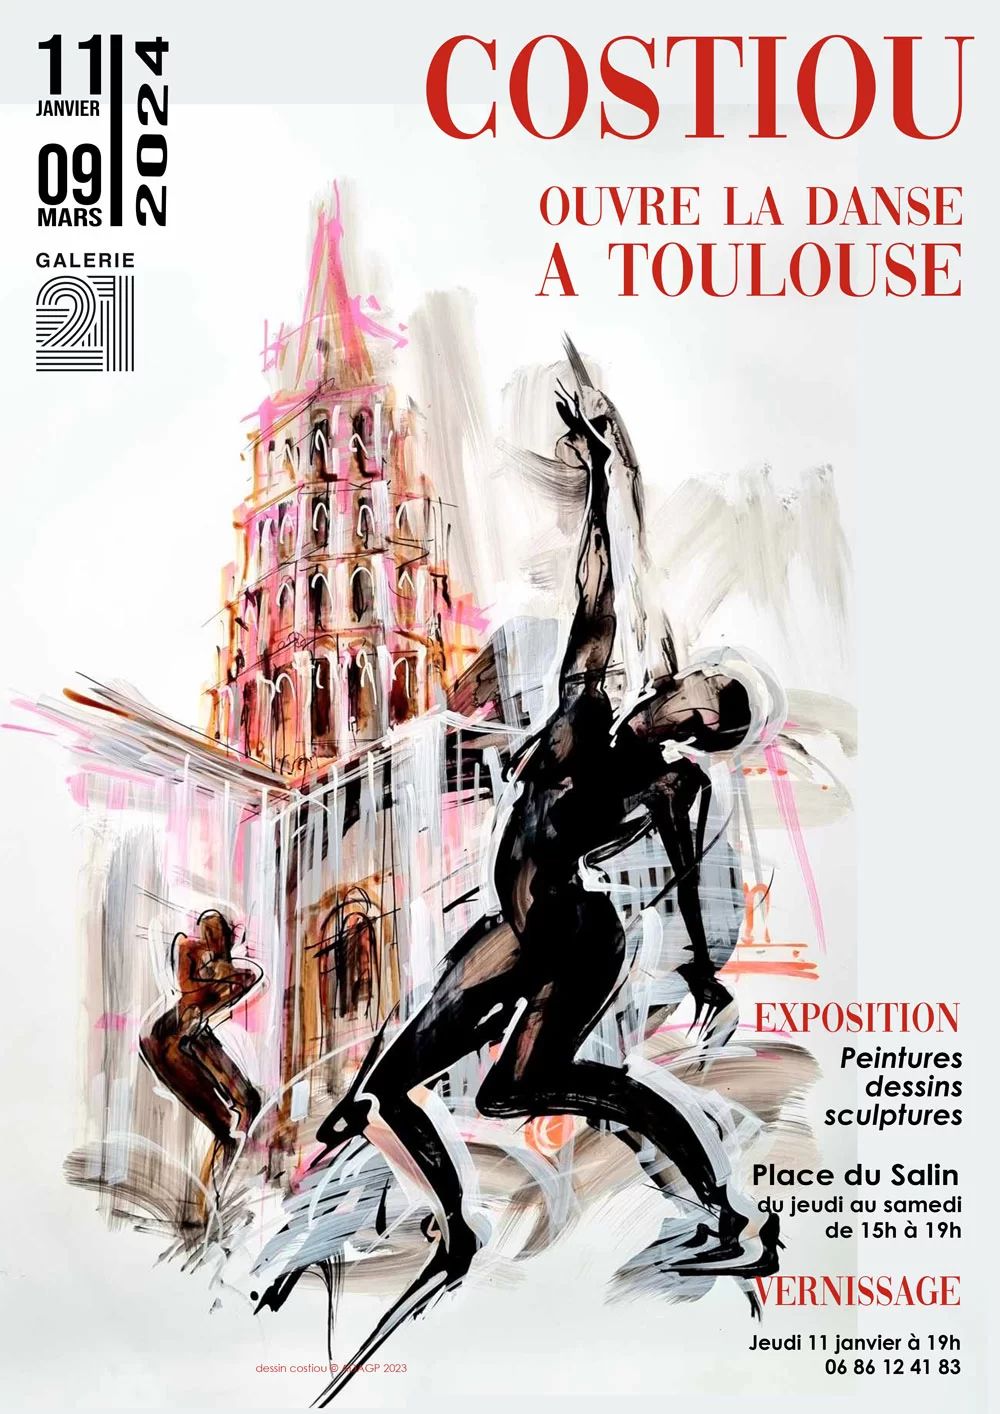 Galerie 21 - Costiou ouvre la danse à Toulouse